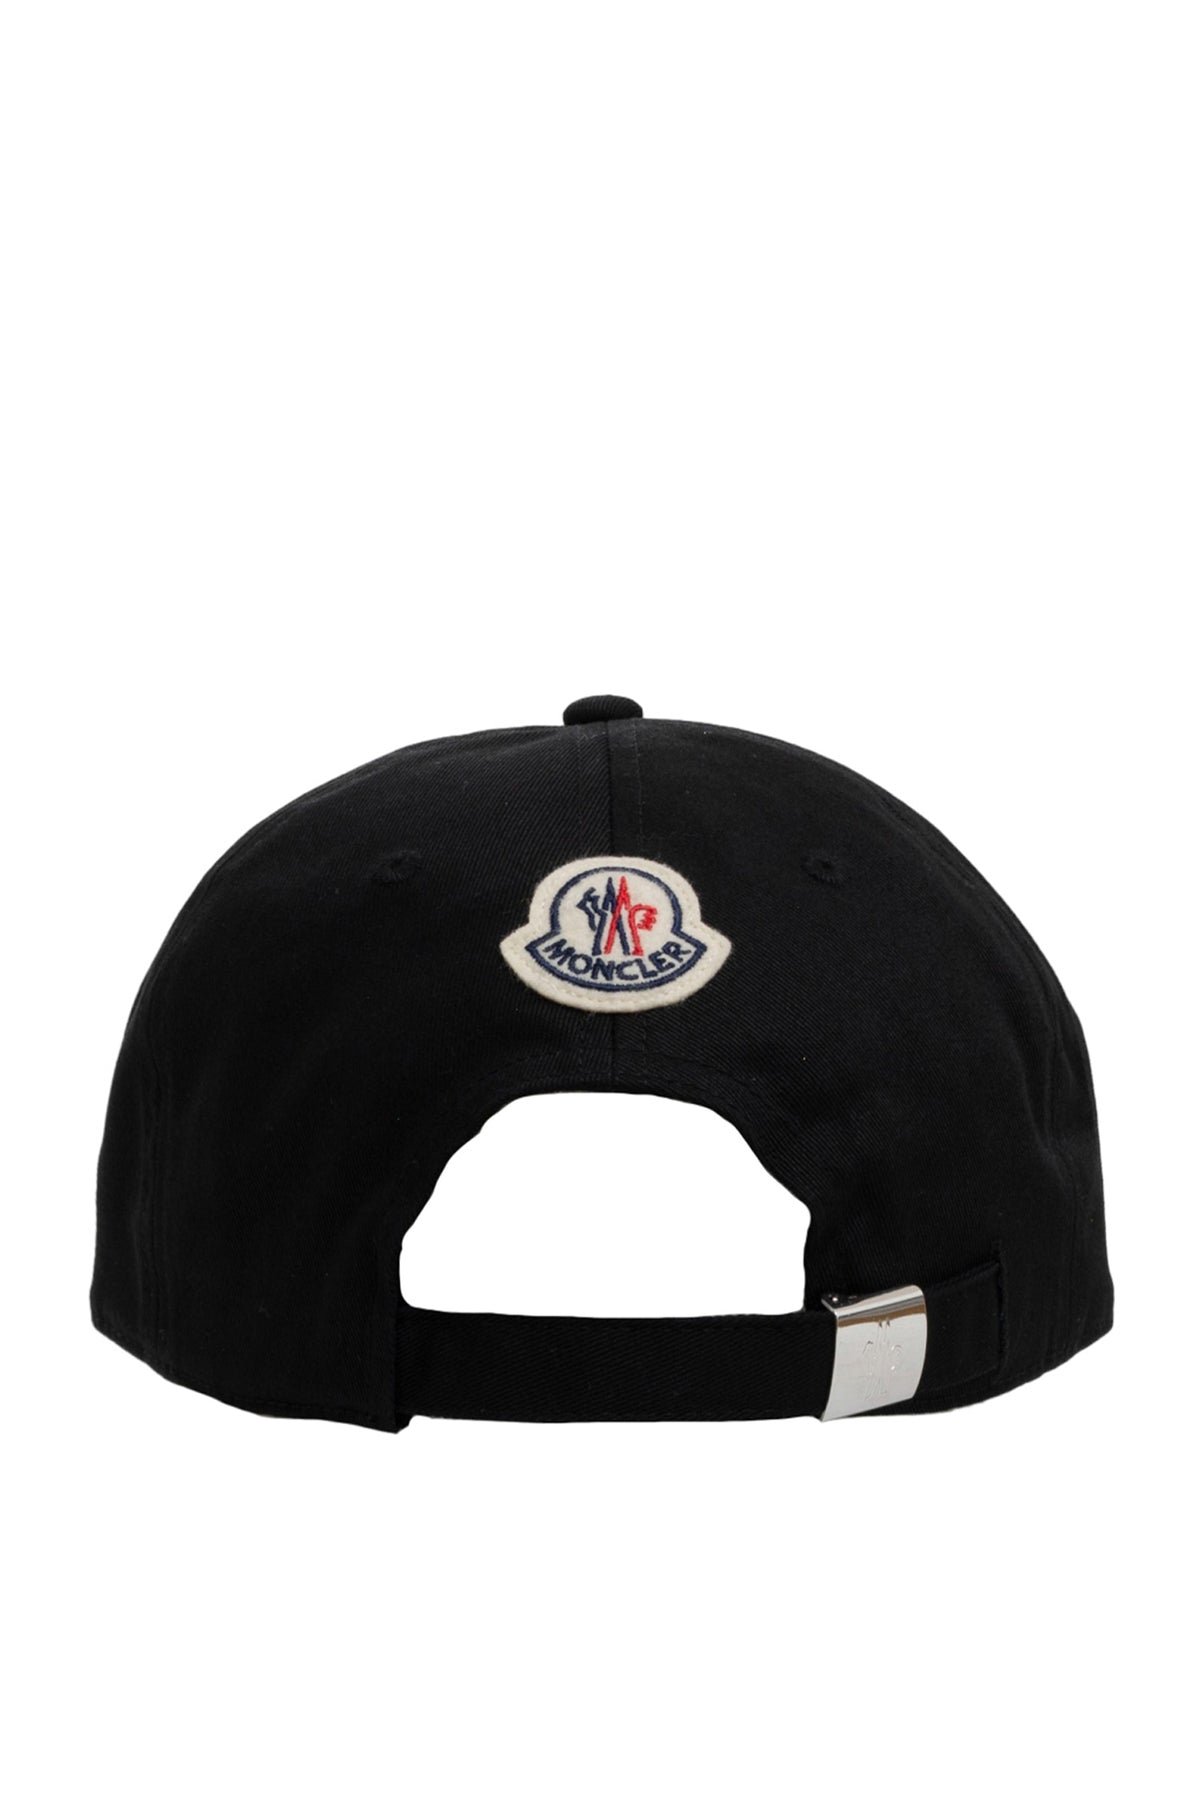 BASEBALL CAP / BLK(999)